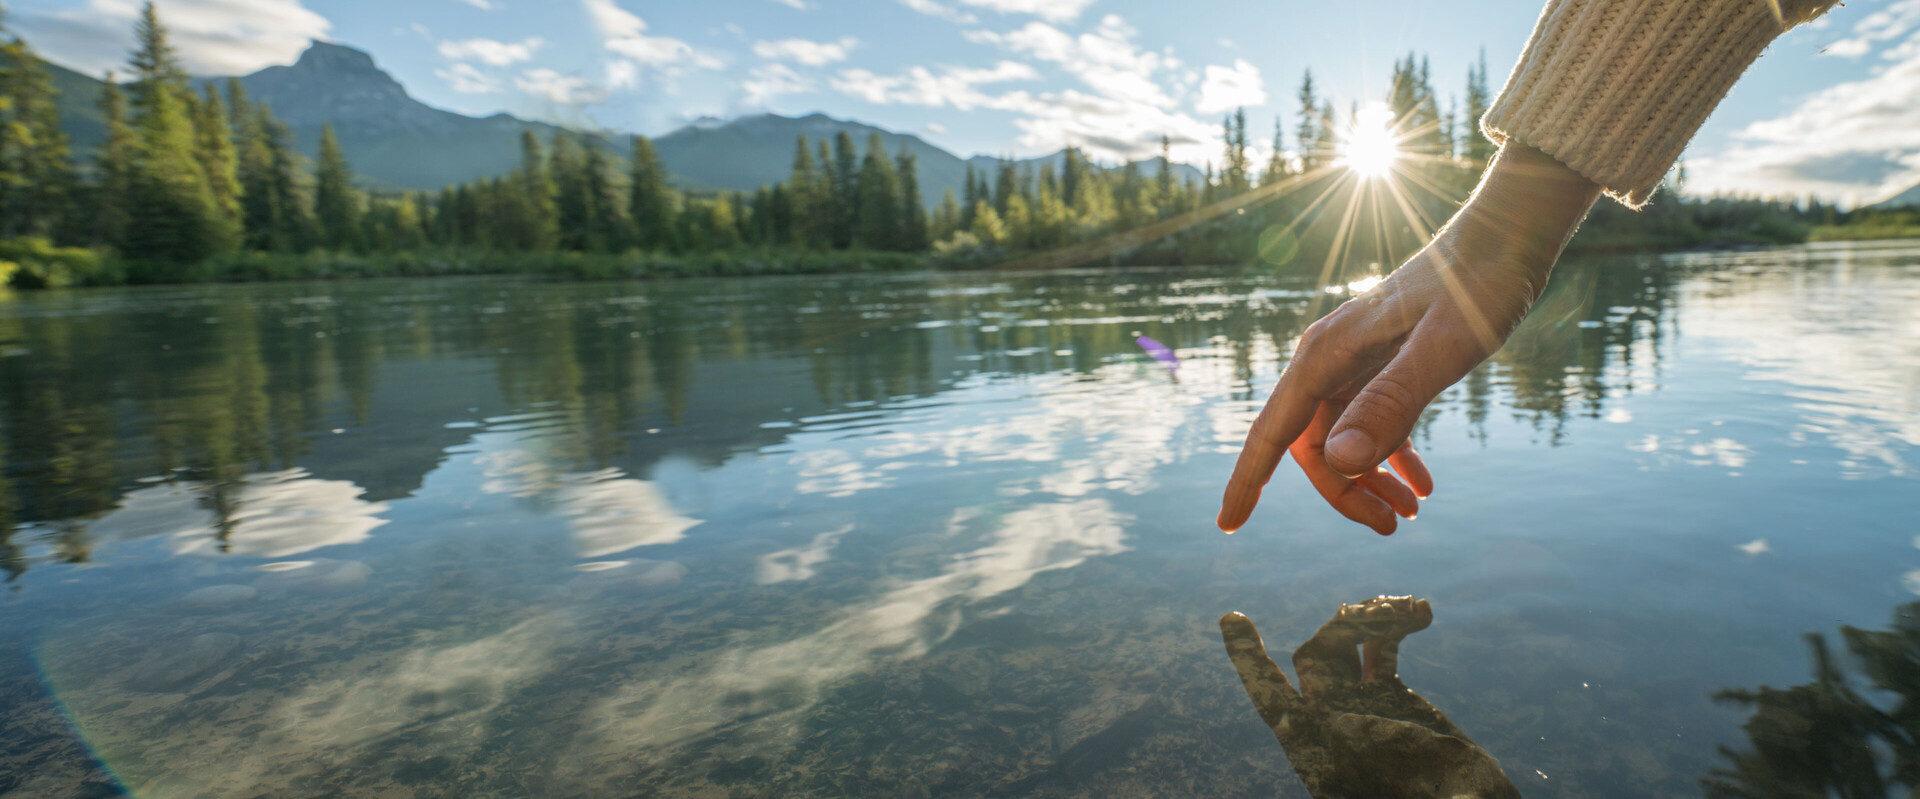 Ein Finger schwebt direkt über einem Bergsee und berührt fast die Oberfläche. Das Bild leitet das Thema Nagelpflege ein.